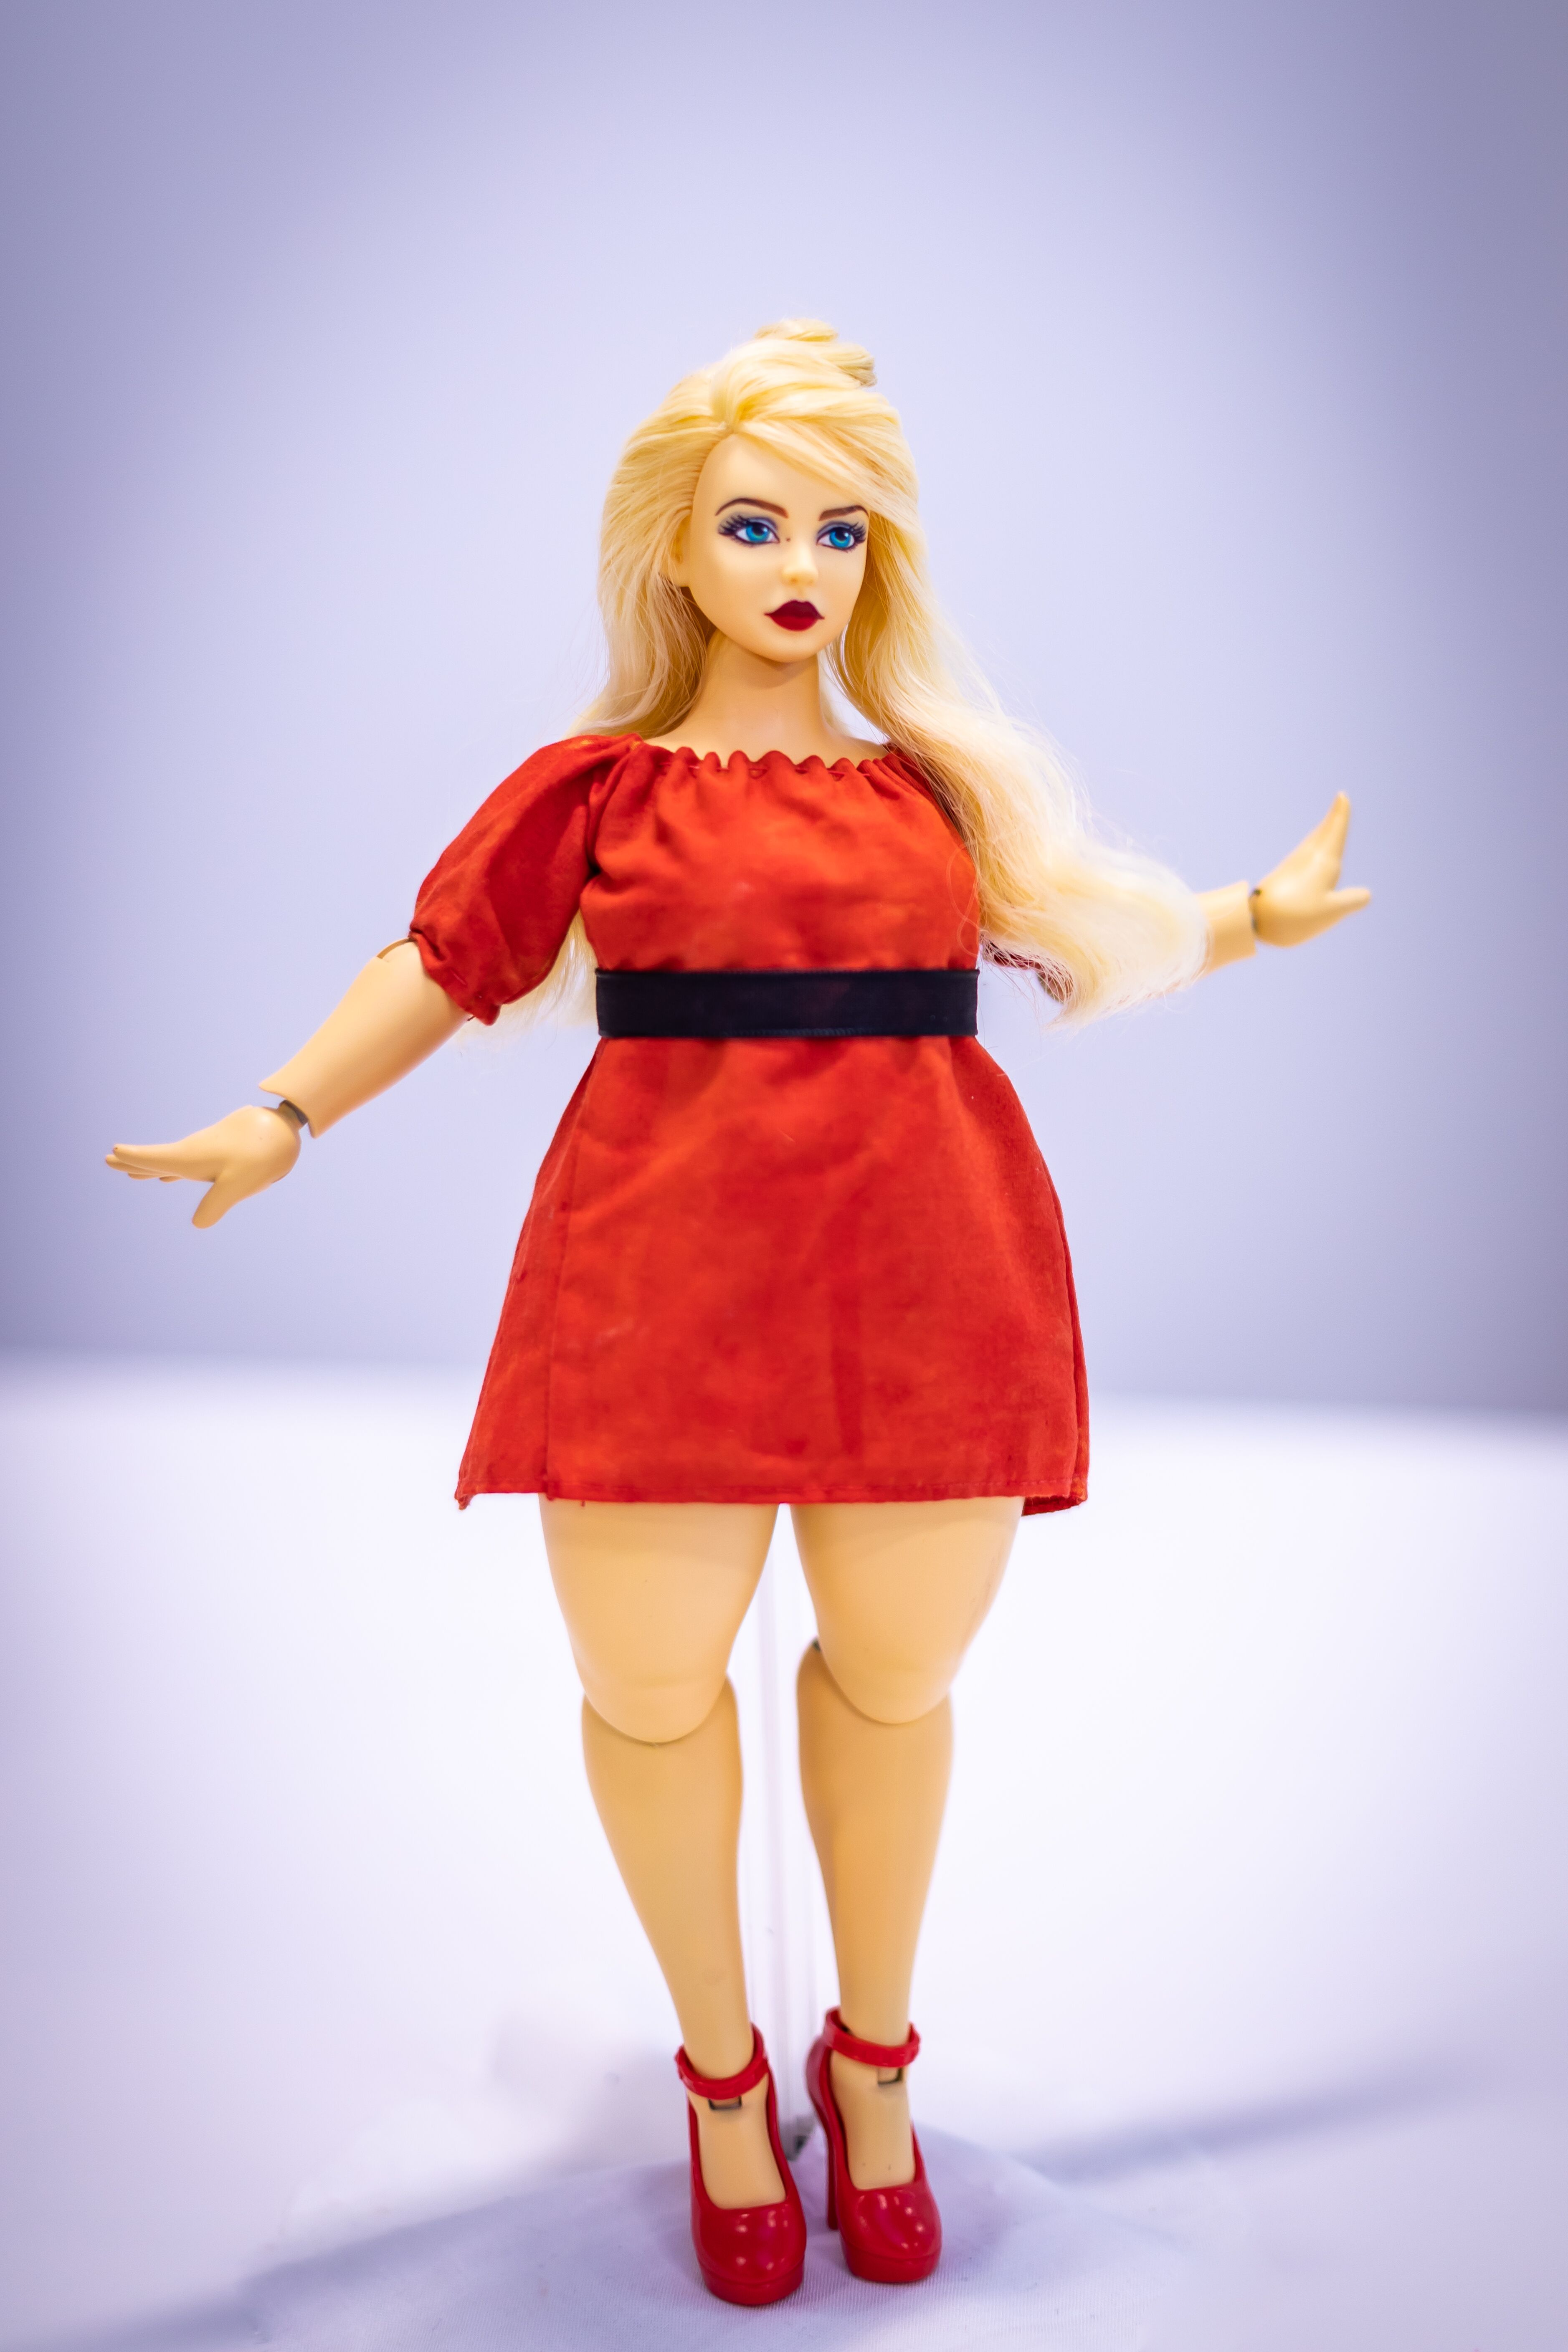 craig deloach recommends Plus Size Barbie Tumblr